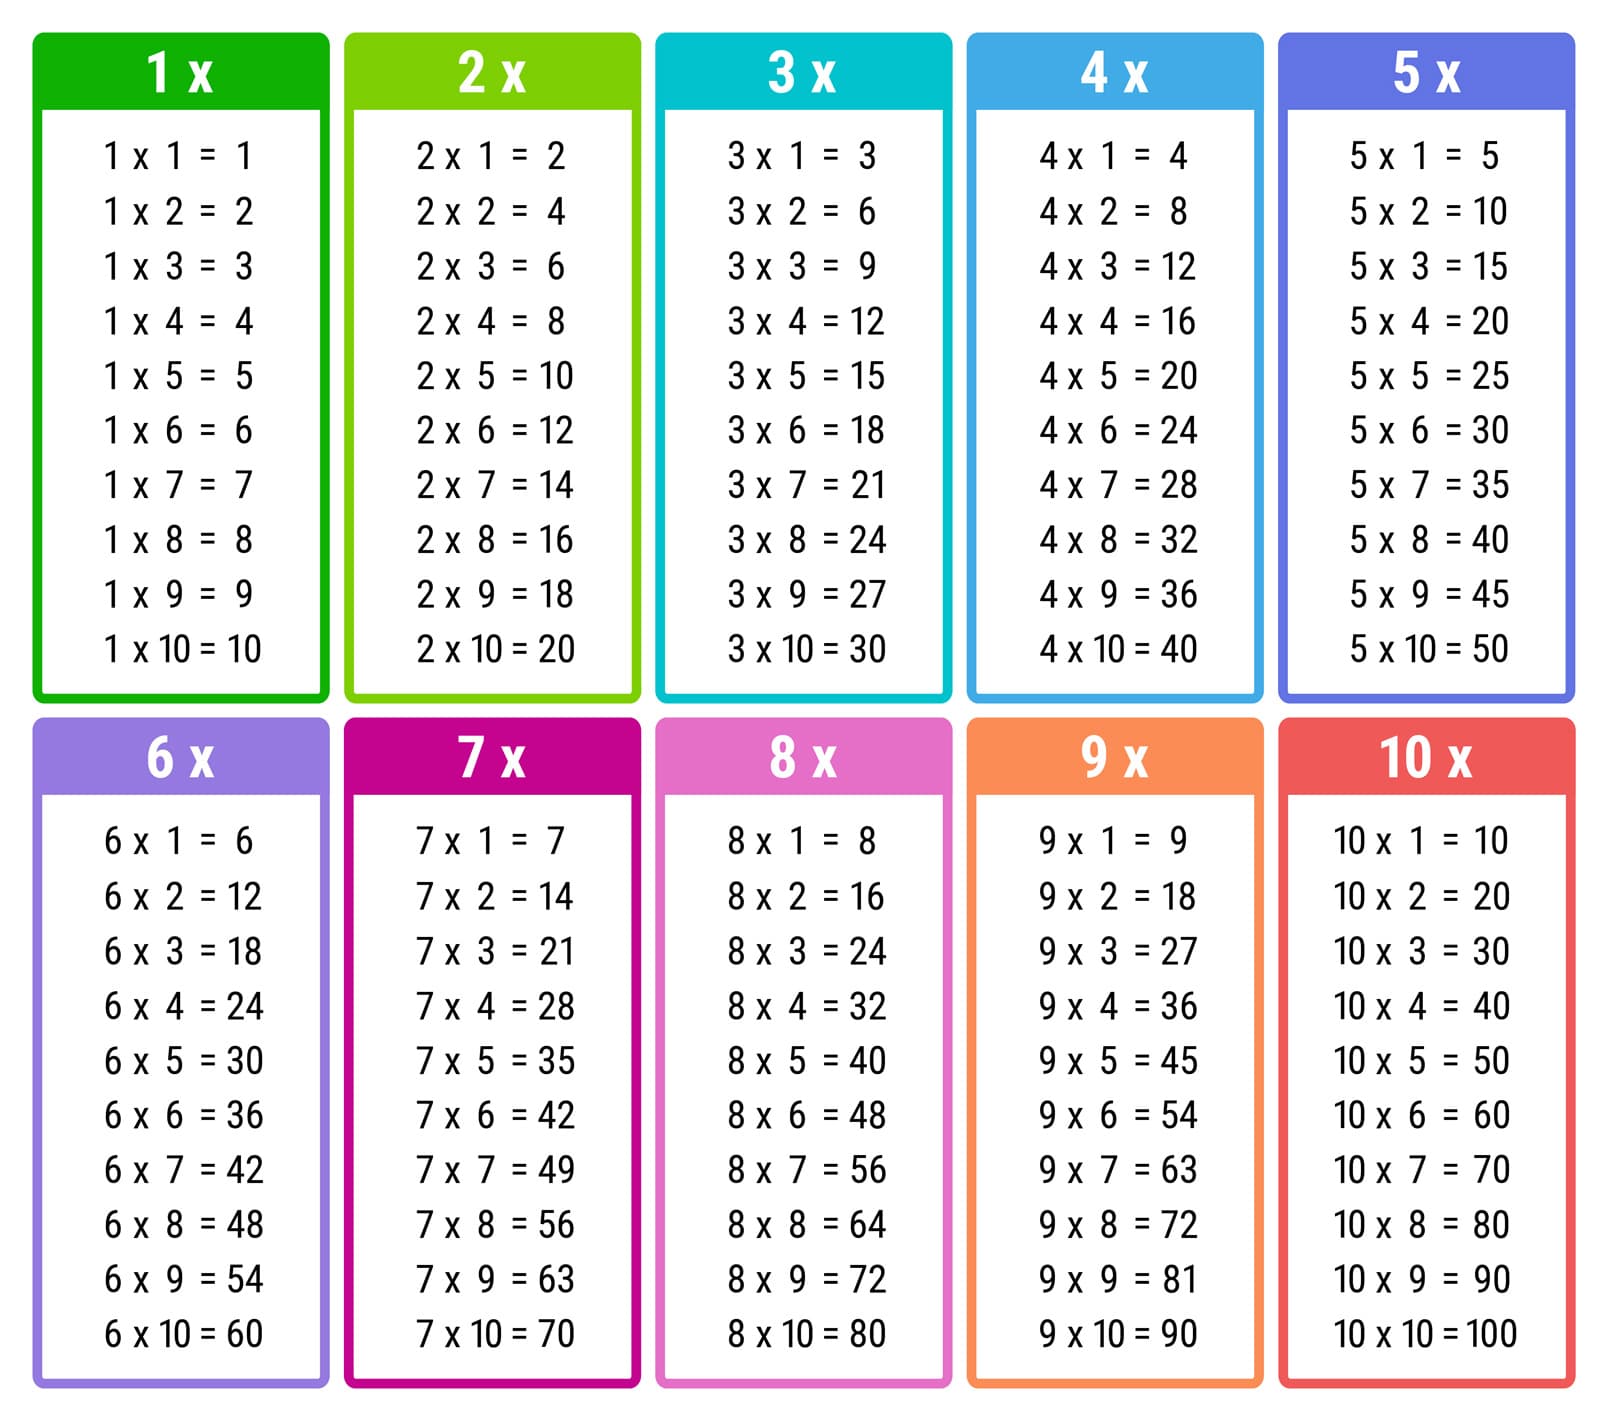 Apprendre les tables de multiplication